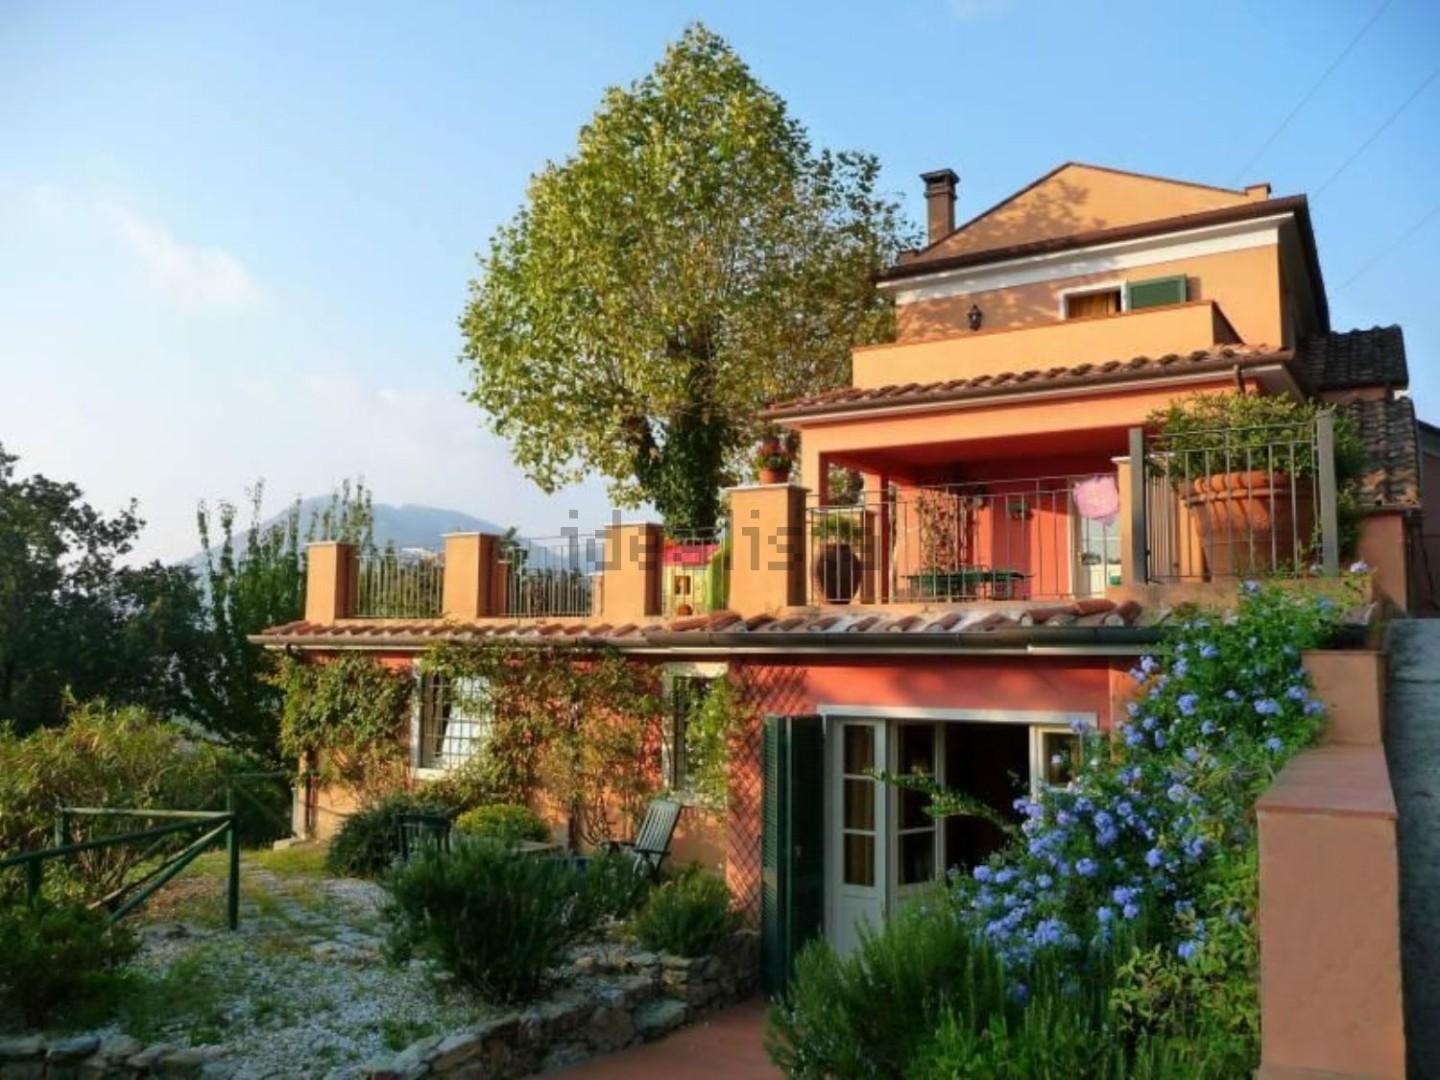 Villa Bifamiliare in vendita a Carrara, 8 locali, prezzo € 450.000 | PortaleAgenzieImmobiliari.it